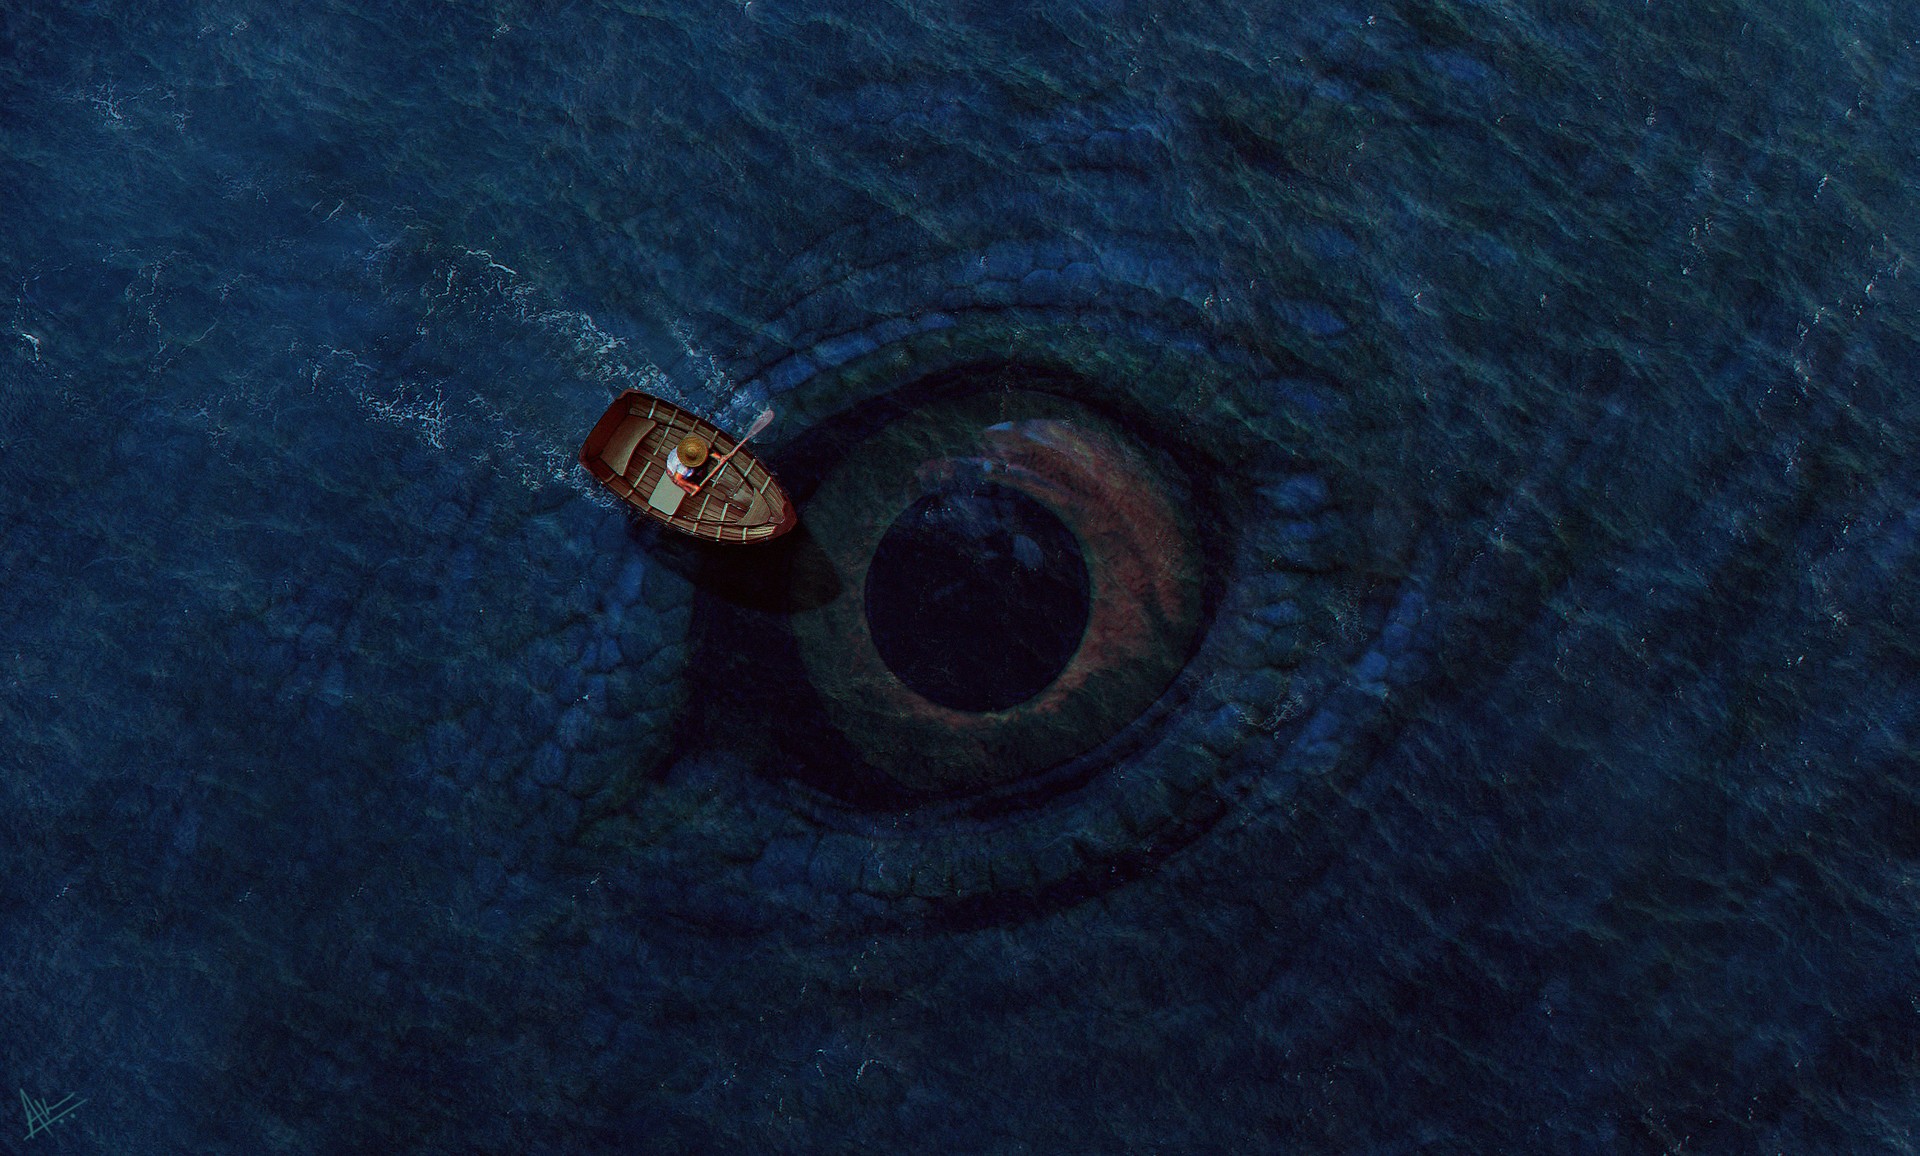 fondos de pantalla de criaturas marinas,azul,ojo,mezclilla,botón,espacio